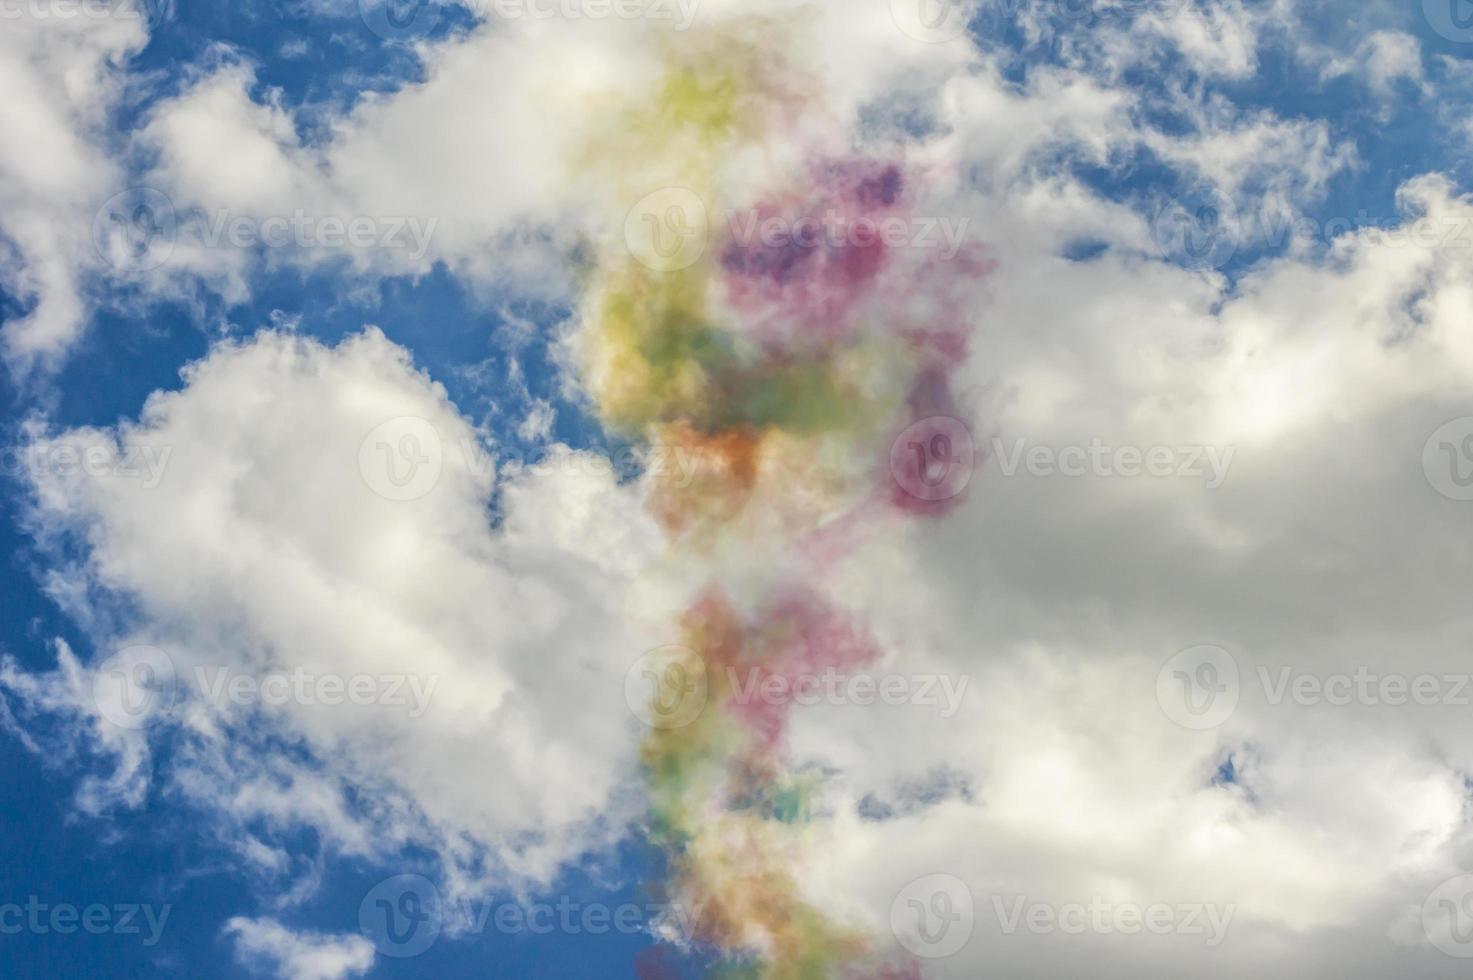 kleurrijke rook in blauwe lucht met wolken foto